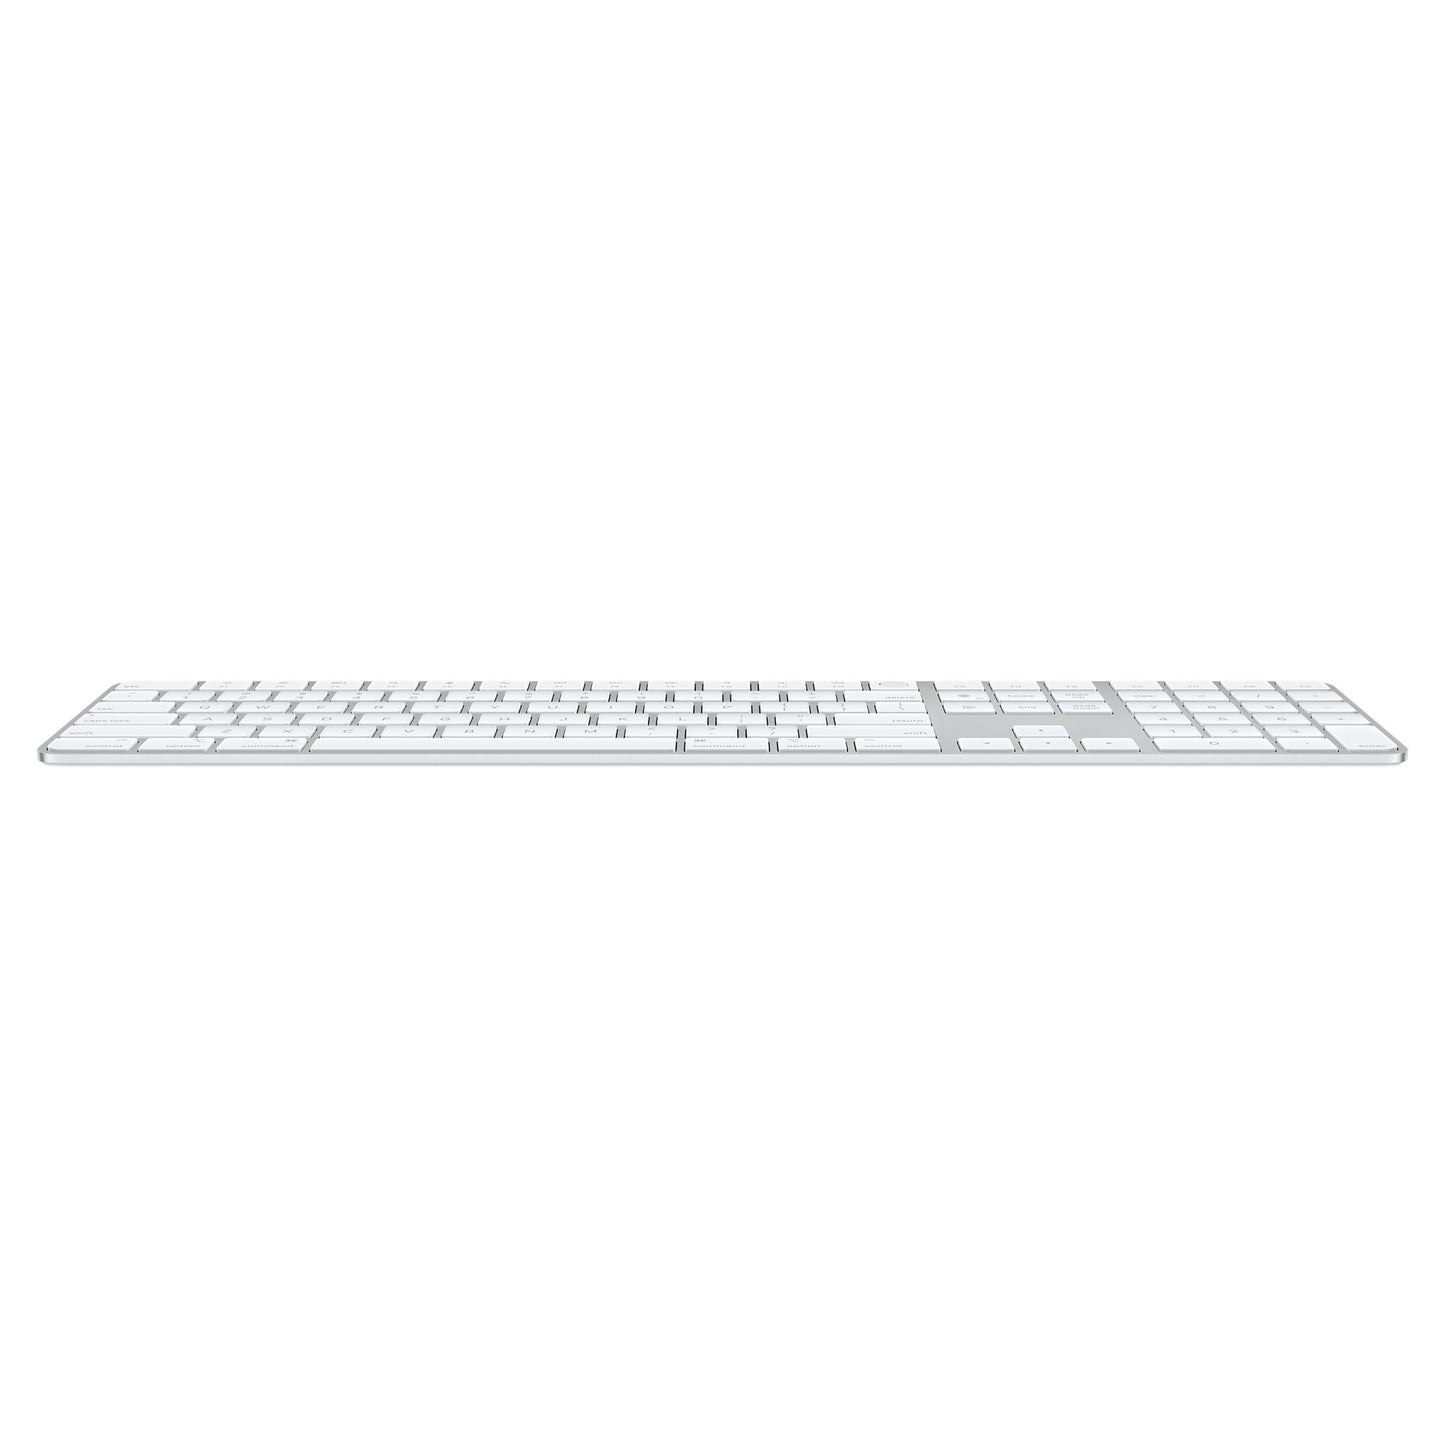 لوحة مفاتيح سحرية مع Touch ID و Numeric Keypad لأجهزة كمبيوتر Mac مع سيليكون Apple - العربية